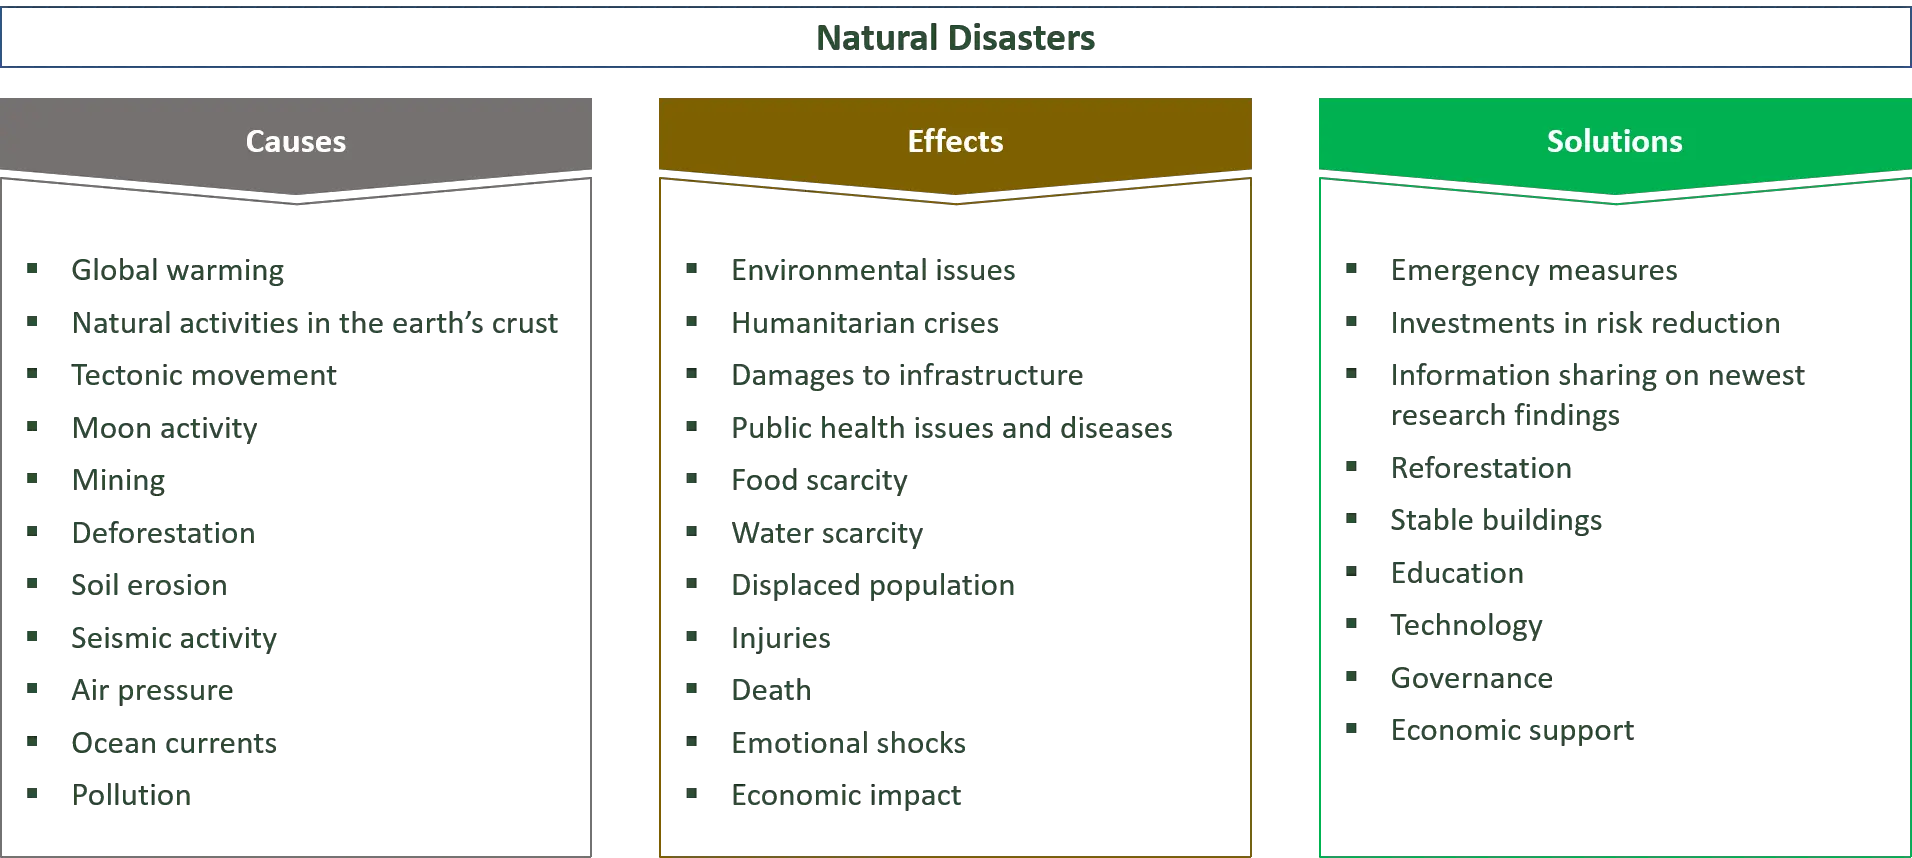 Luonnonkatastrofien syyt, vaikutukset ja ratkaisut